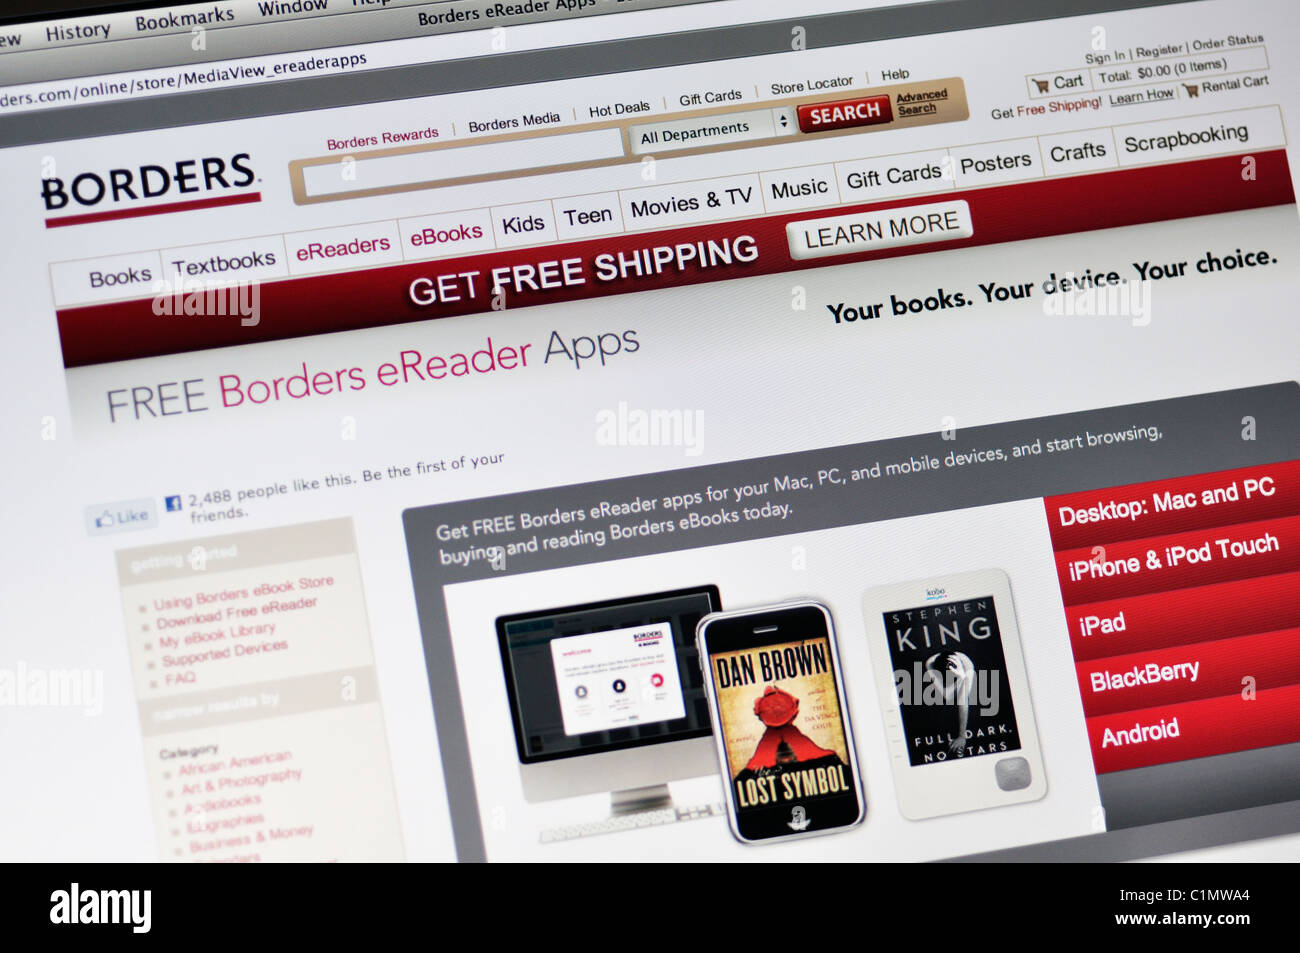 Borders bookstore website - Kobo ereader apps Stock Photo